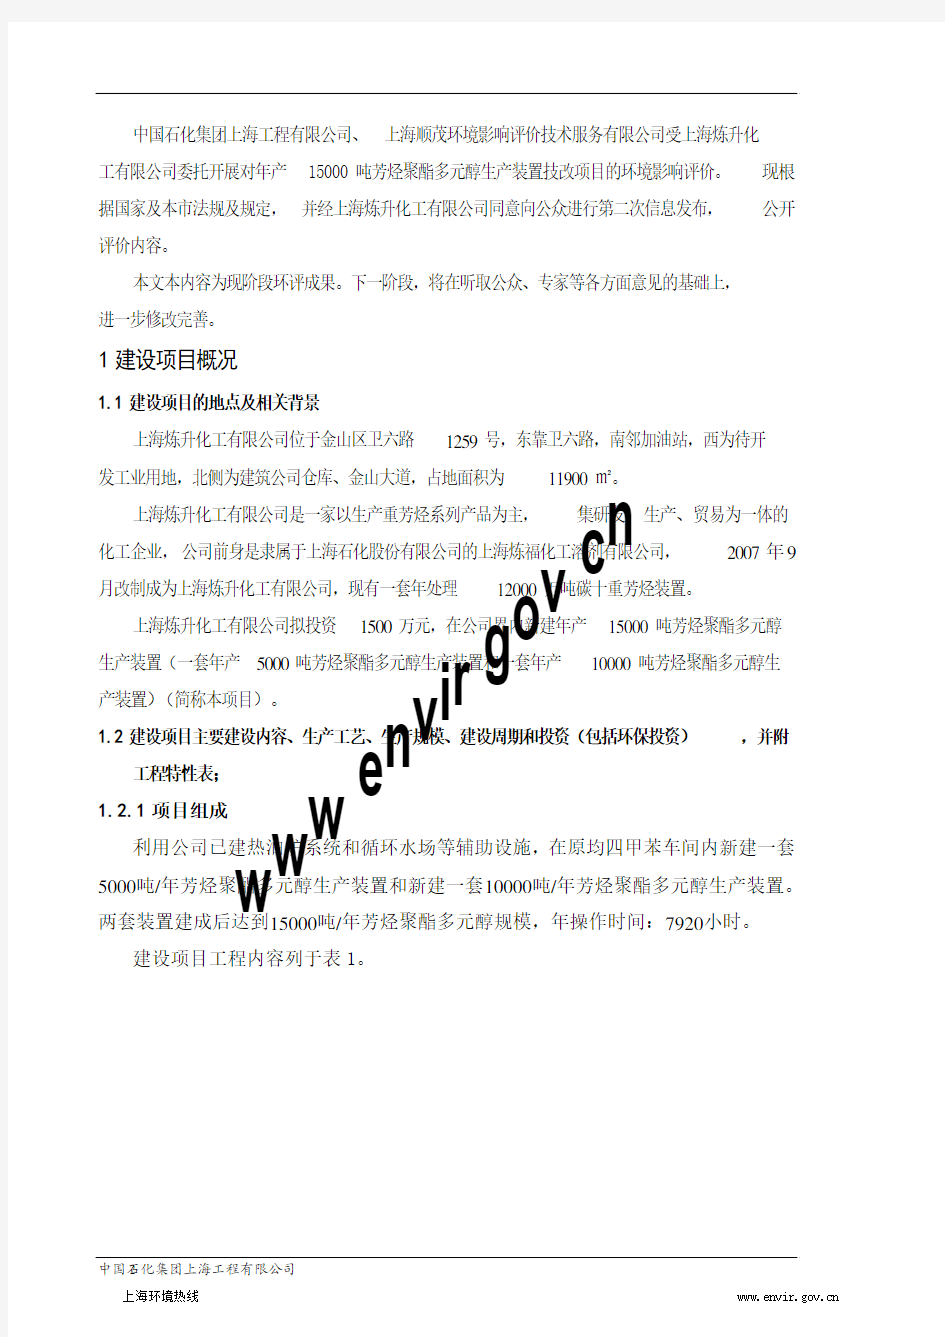 201211-上海炼升化工有限公司年产15000吨芳烃聚酯多元醇生产装置技改项目